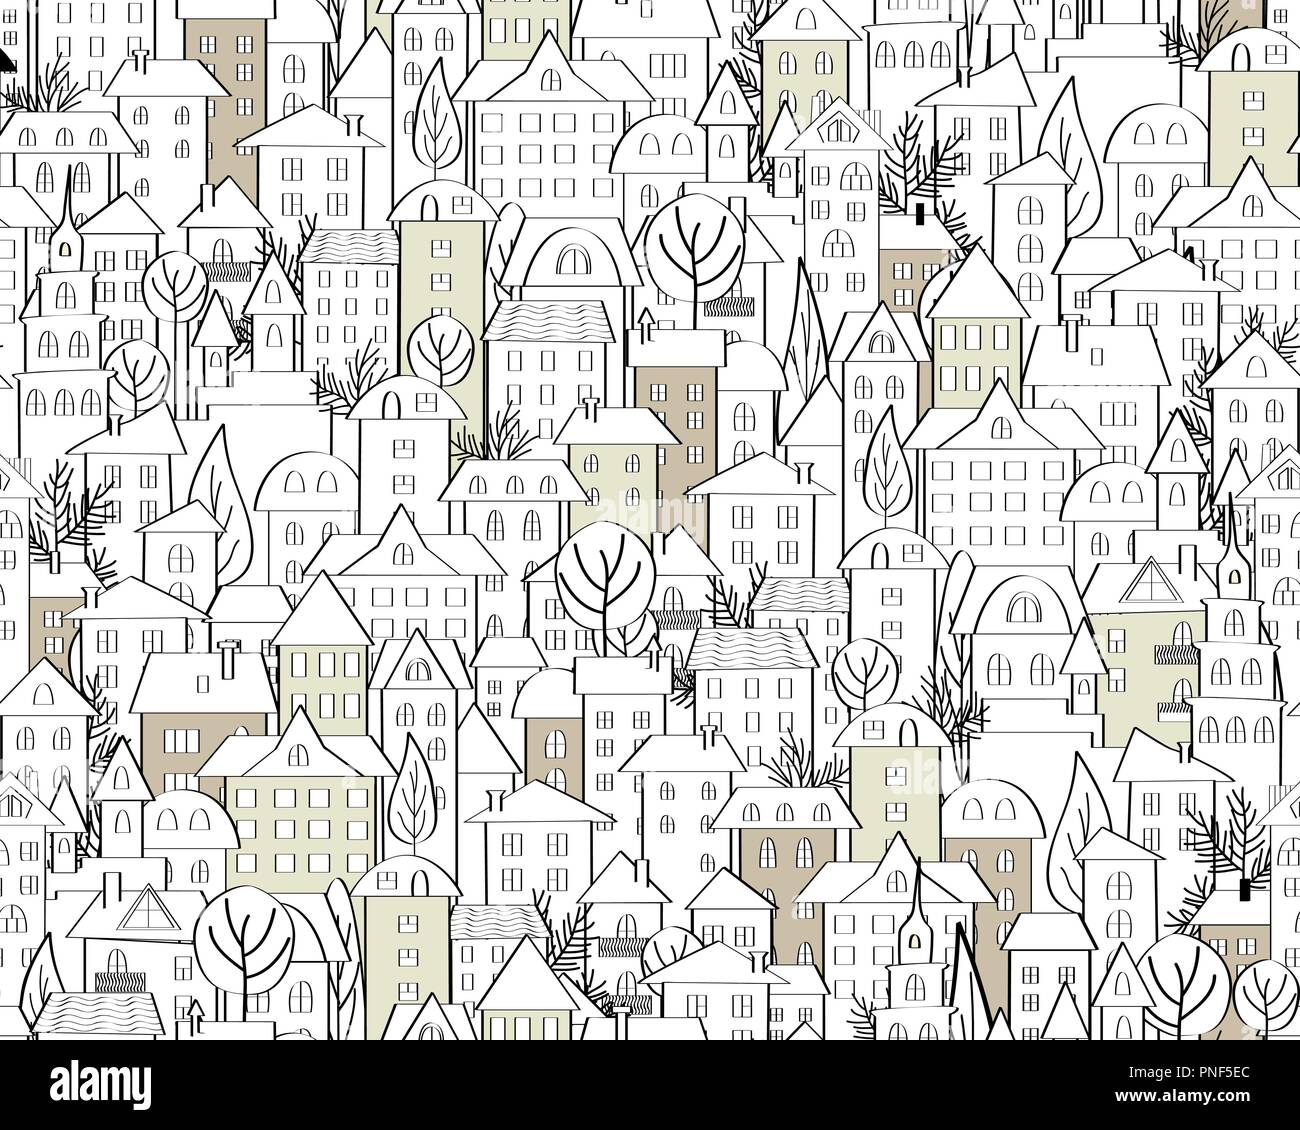 Muster mit Hand gezeichnet doodle Häuser. Abbildung mit niedlichen Stadt Dächer und Bäume. Strichzeichnung. Nahtlose Hintergrund in Schwarz und Weiß. Vektor Stock Vektor